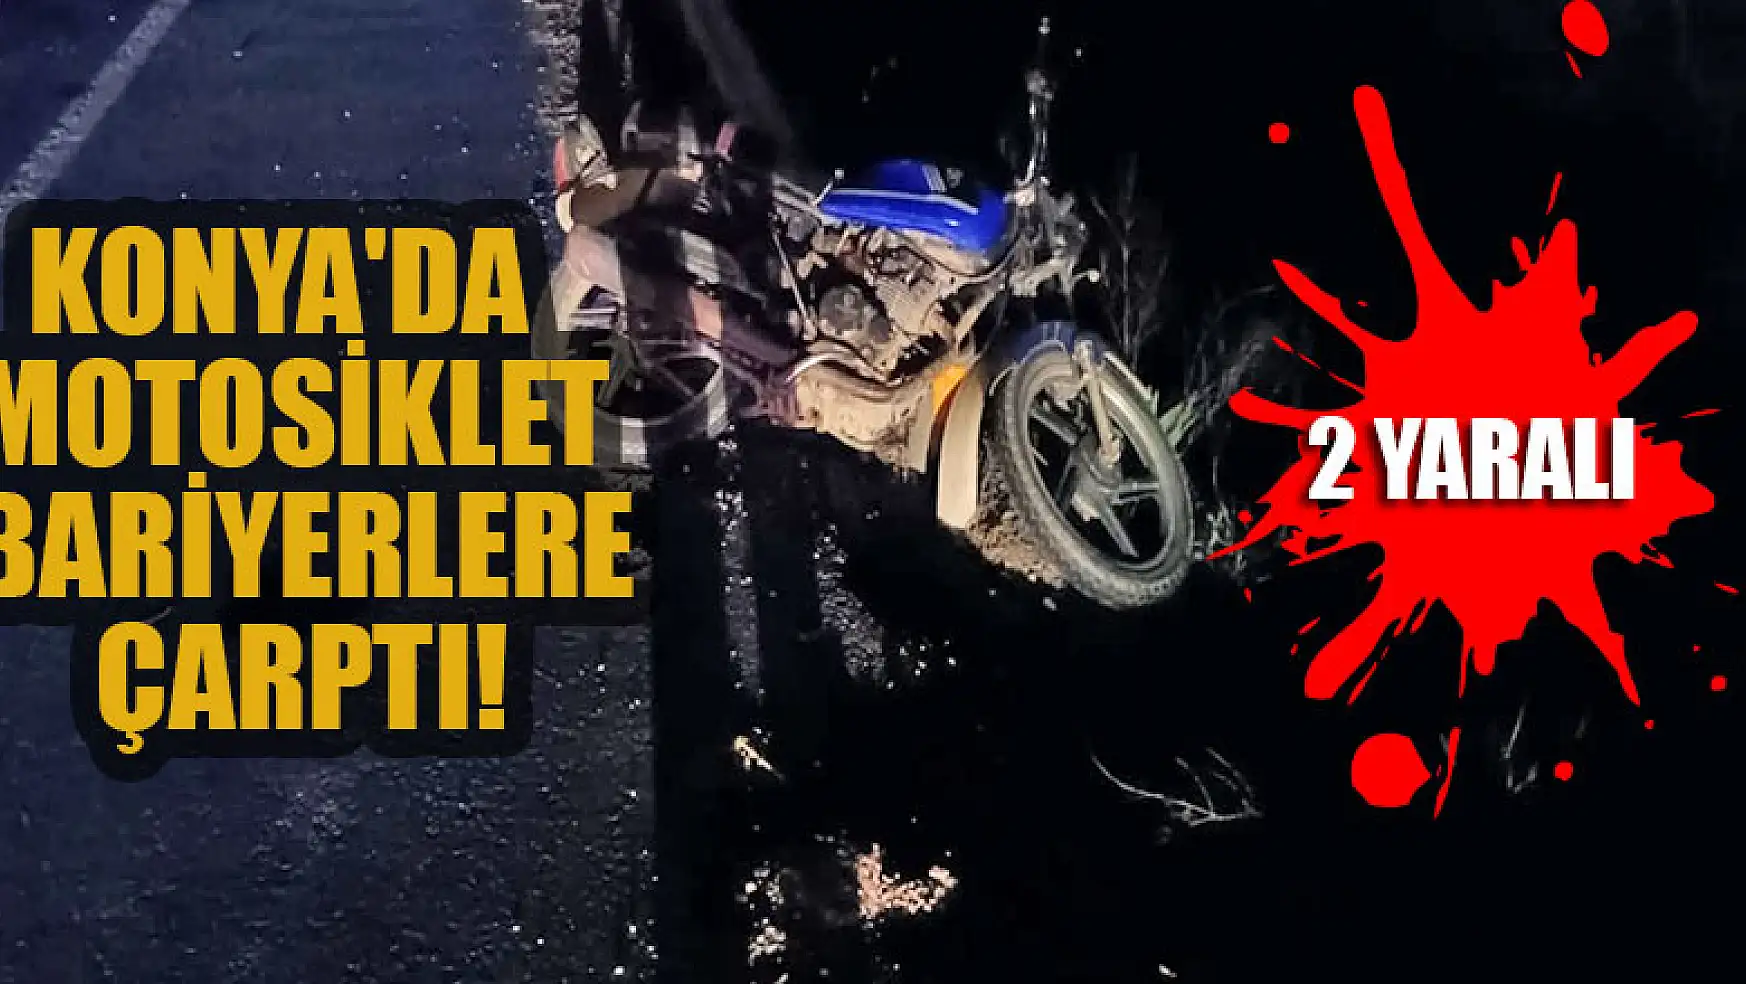 Konya'da motosikletin bariyerlere çarpması sonucu 2 kişi yaralandı